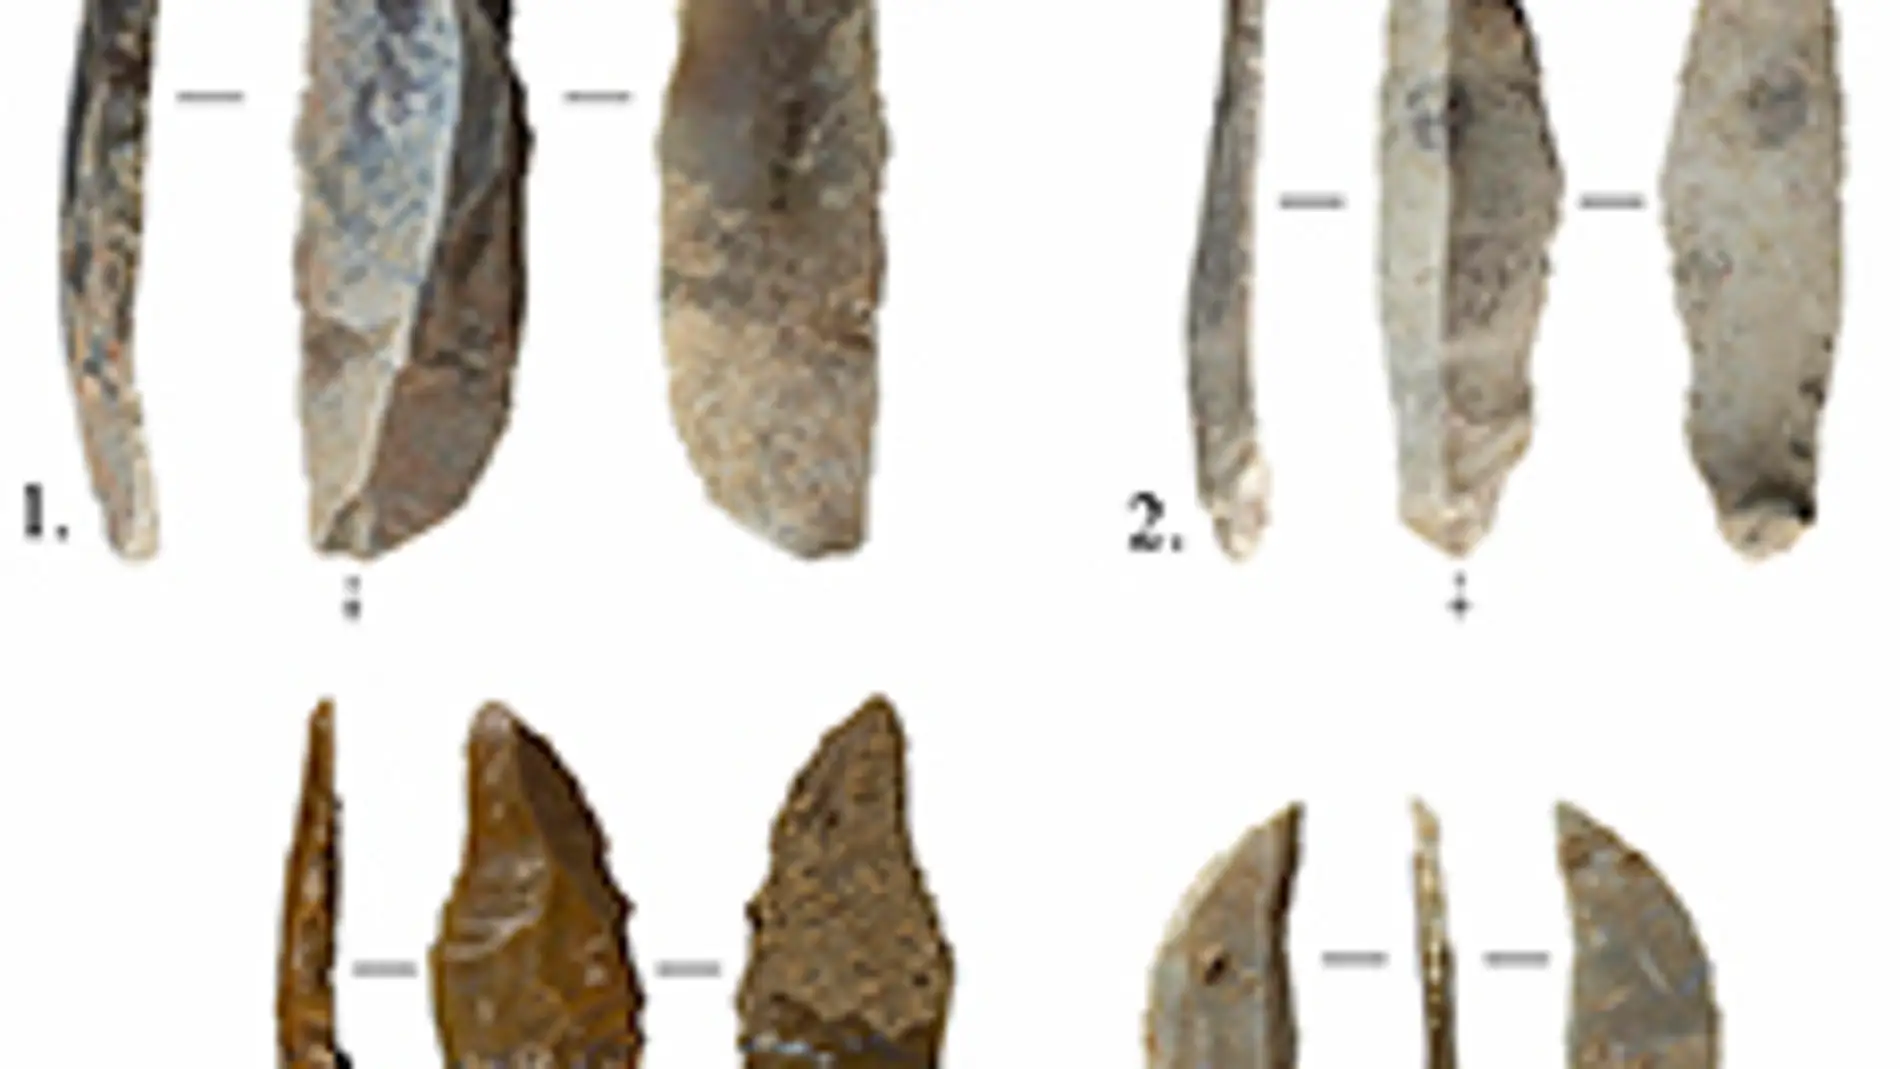 Hallan herramientas neandertales en una cueva de Tarragona